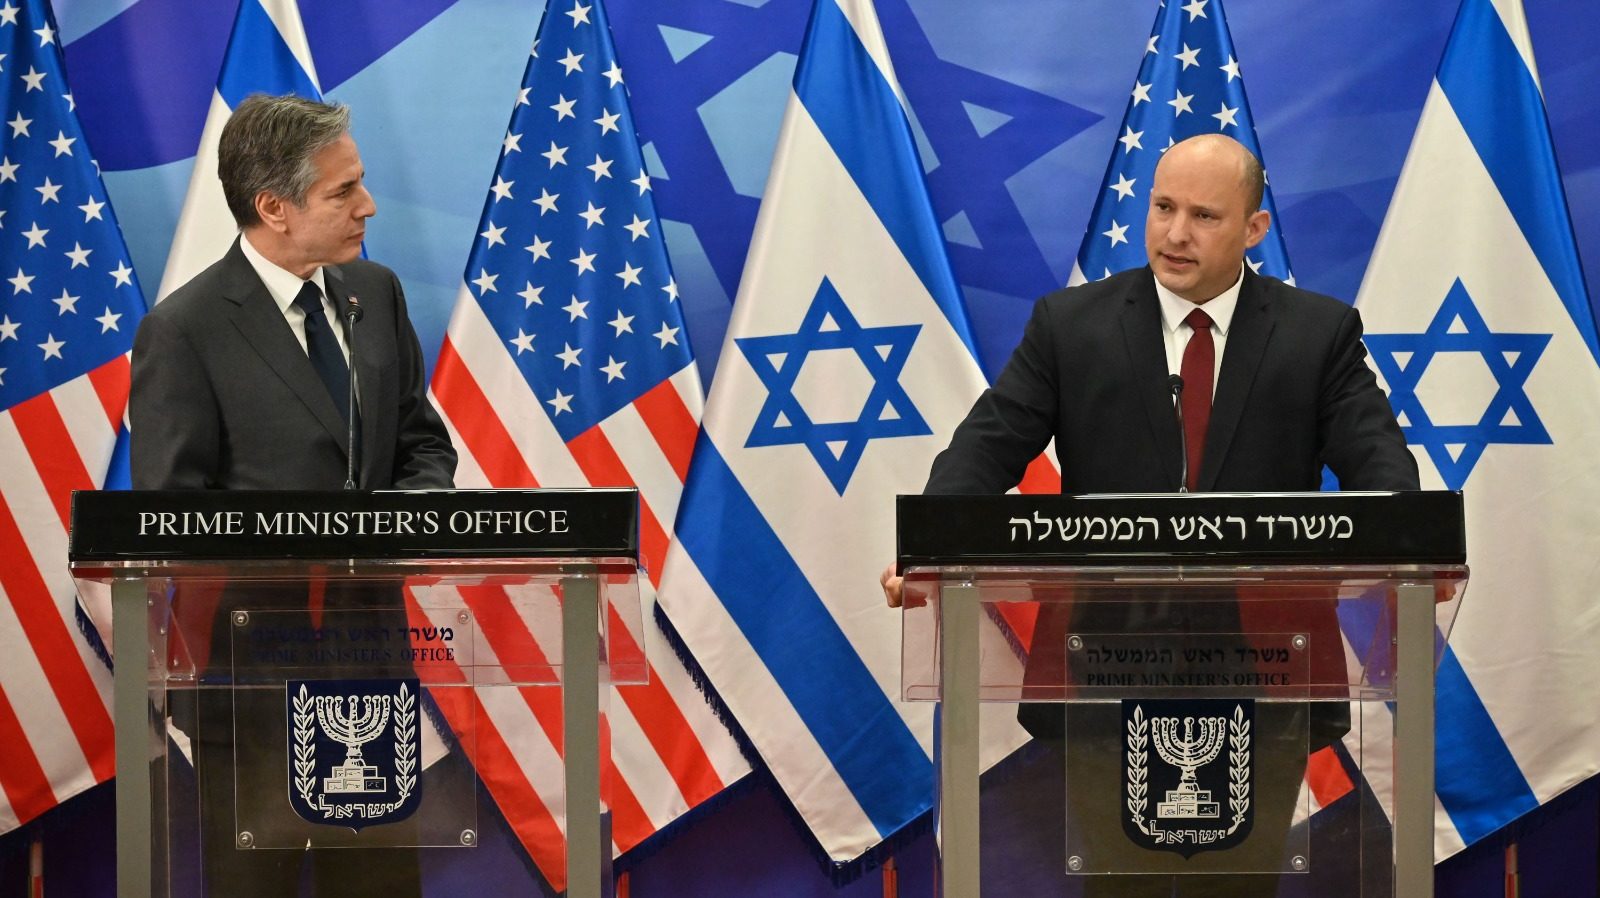 Israel’s FM Lapid Announces Permanent Regional Forum To Deter Iran